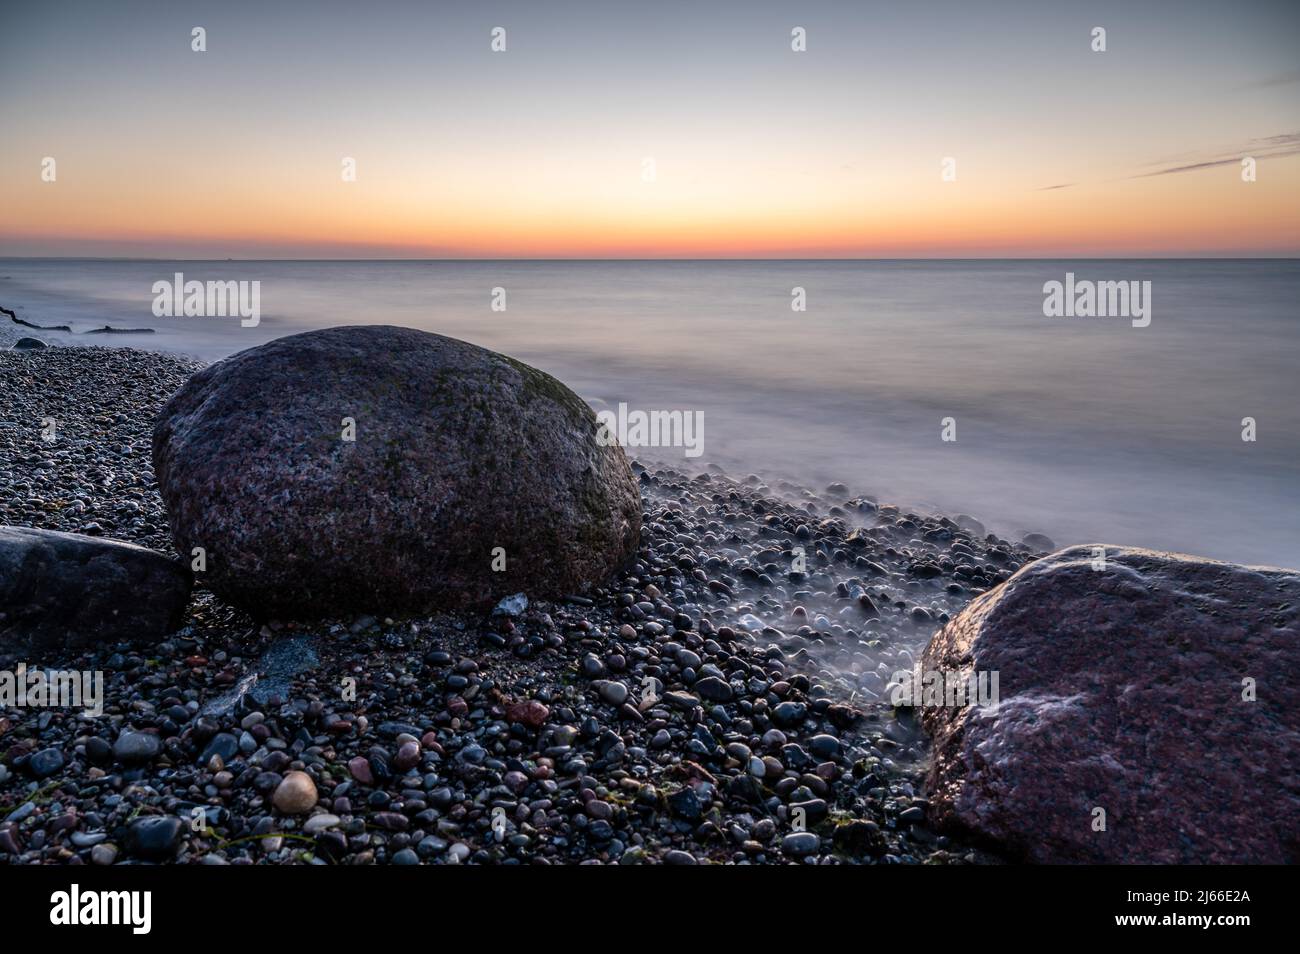 Langzeitbelichtung von grossen Felsbrocken am steinigen Strand der Ostsee bei Sonnenuntergang, Ostseebad Nienhagen, Mecklenburg-Vorpommern Foto Stock